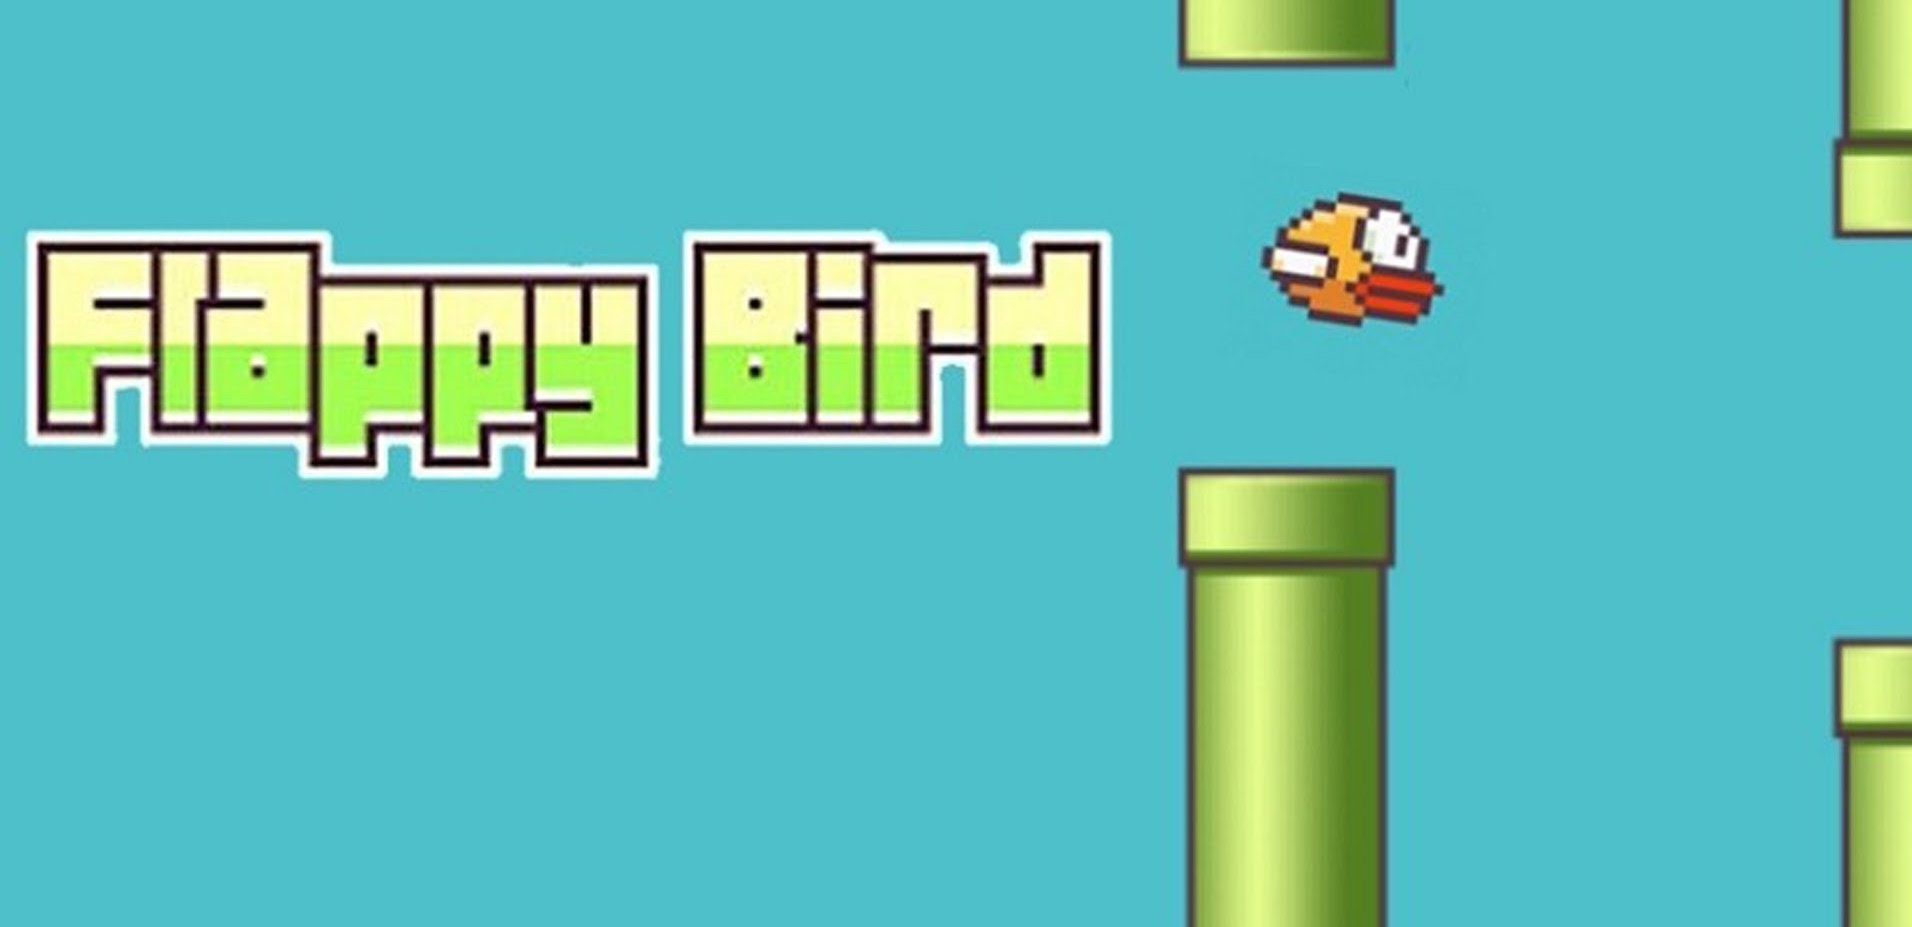 Relajante Merecer Menagerry Programa tu Flappy Bird con Scratch en menos de 15 minutos – Programamos